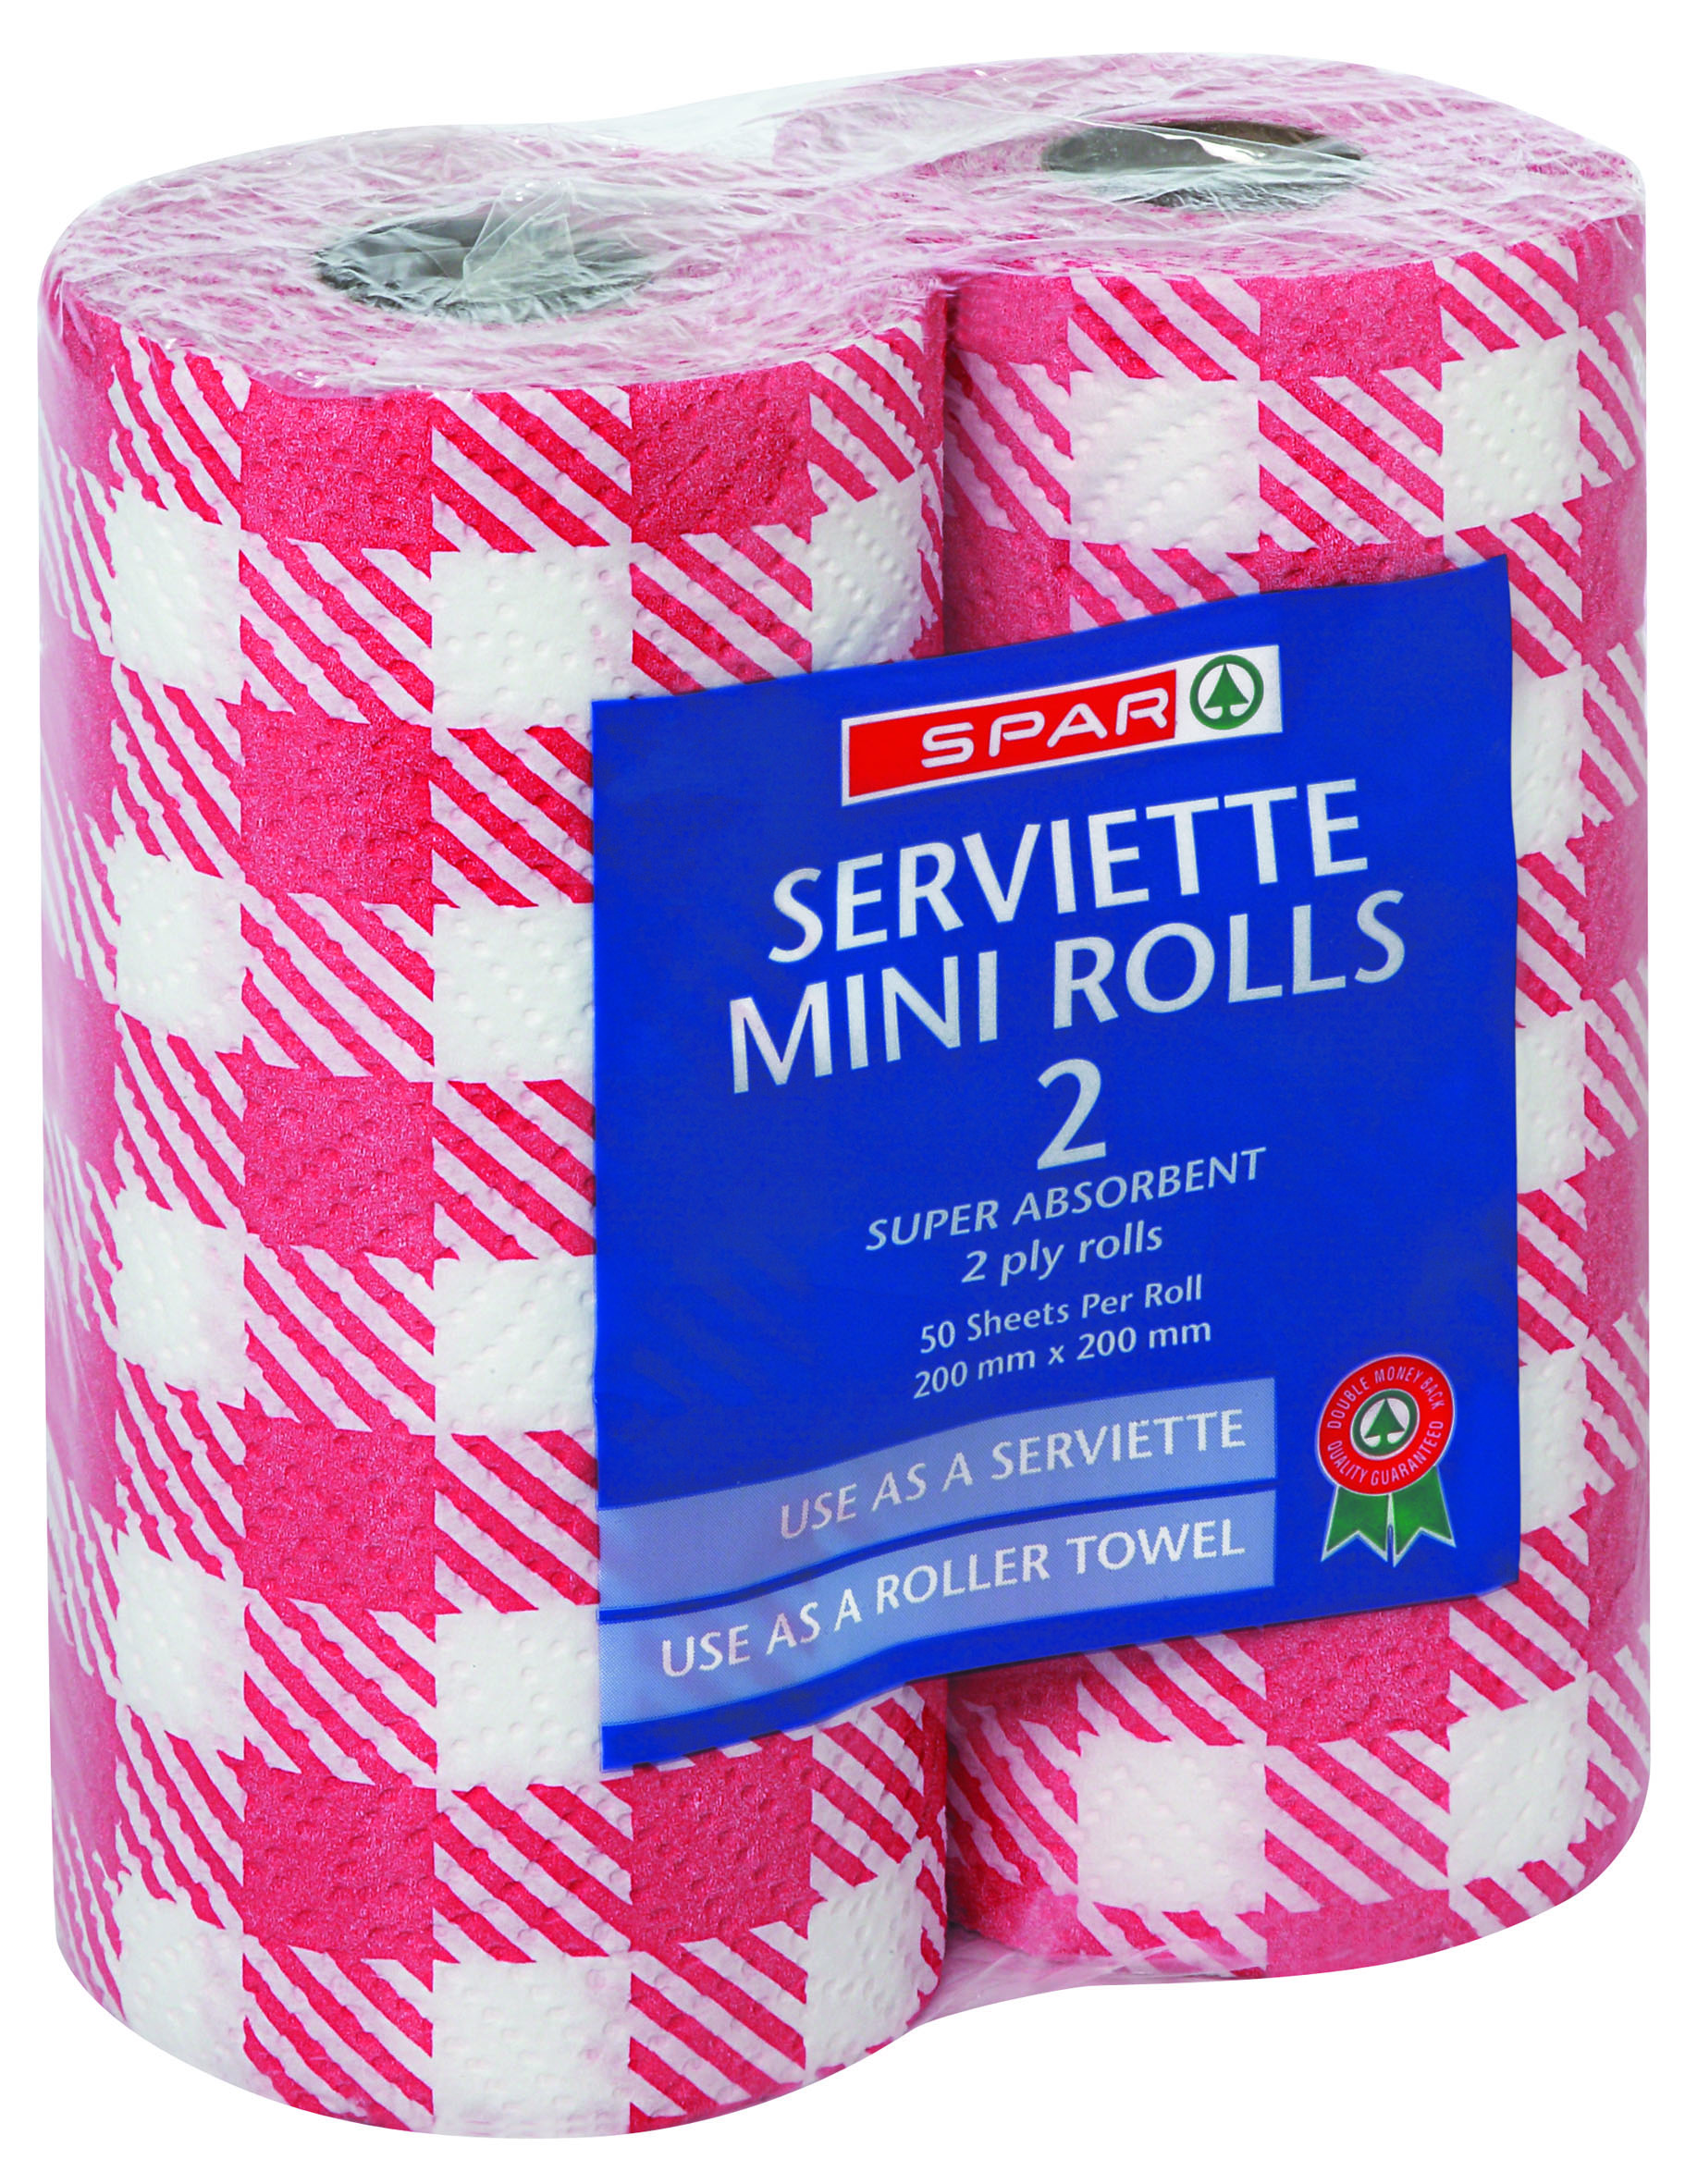 serviette mini rolls checks